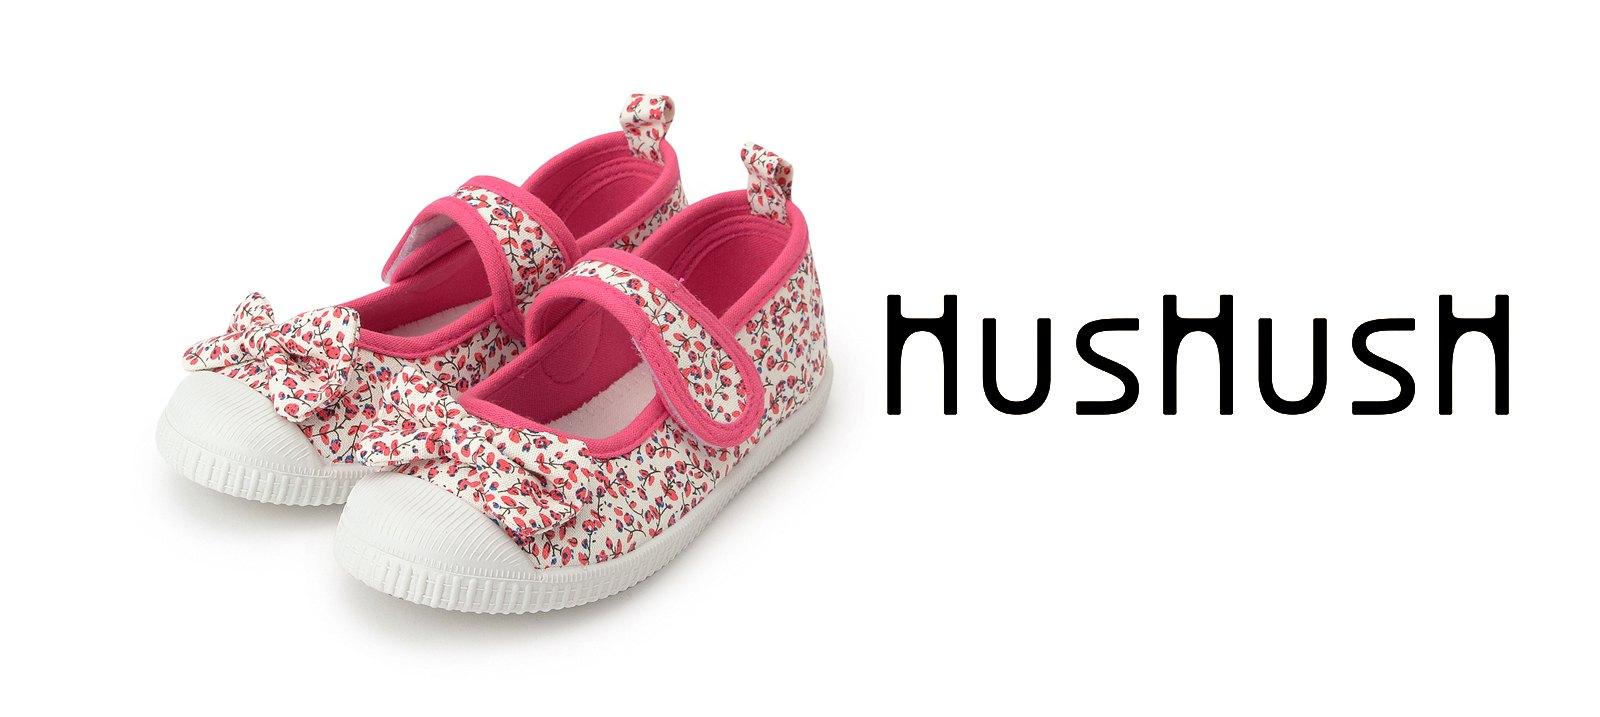 HusHush for kids